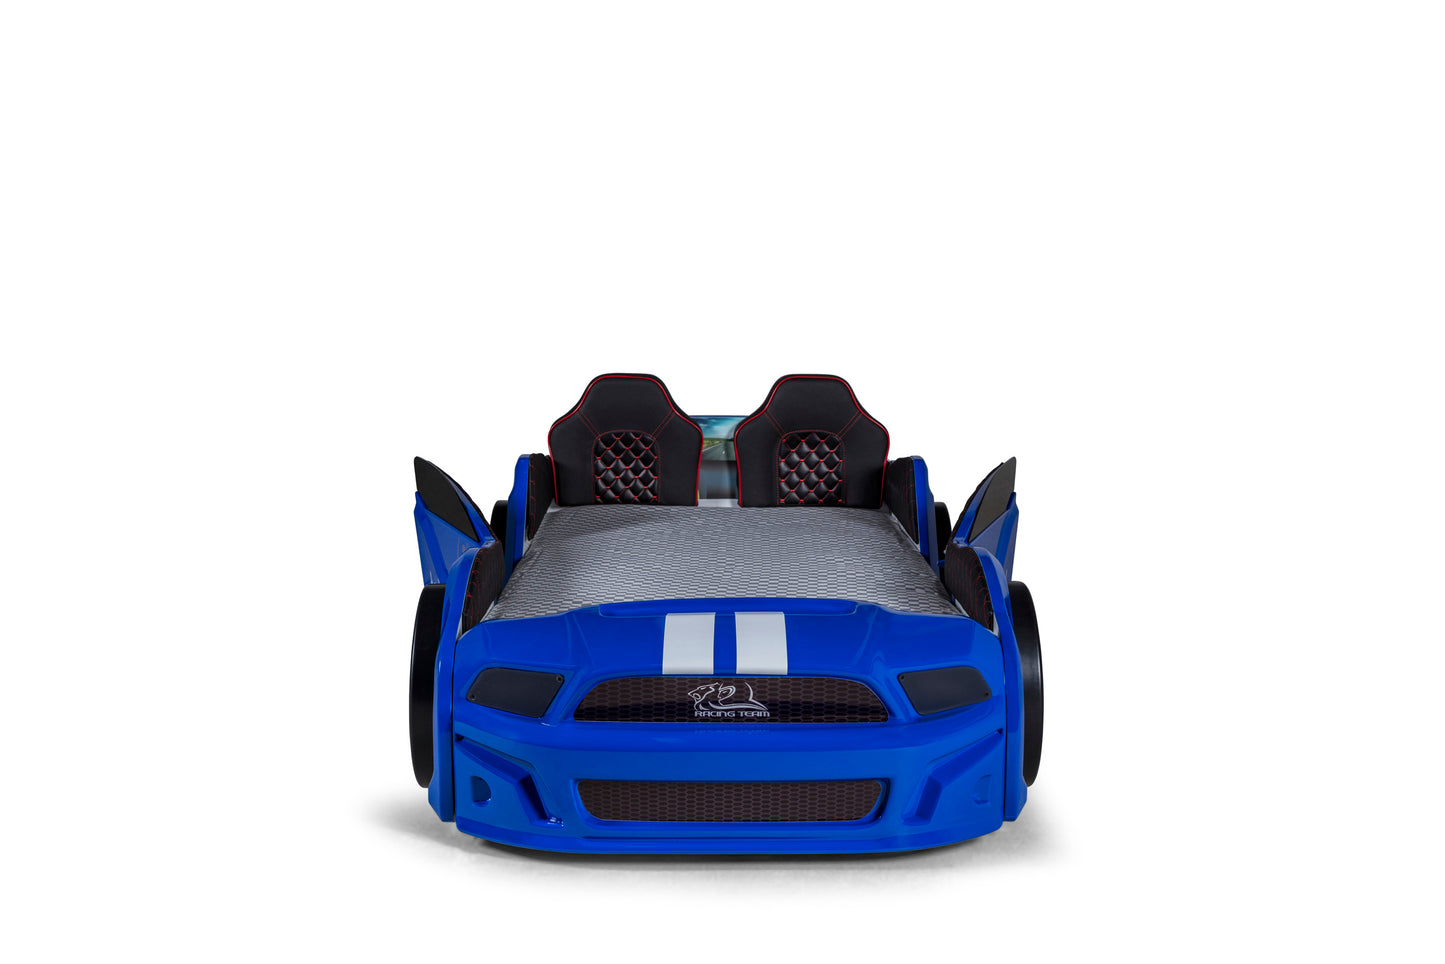 Letto singolo contenitore a forma di auto sportiva MUSTANG colore blu, con apertura porte, materasso incluso.